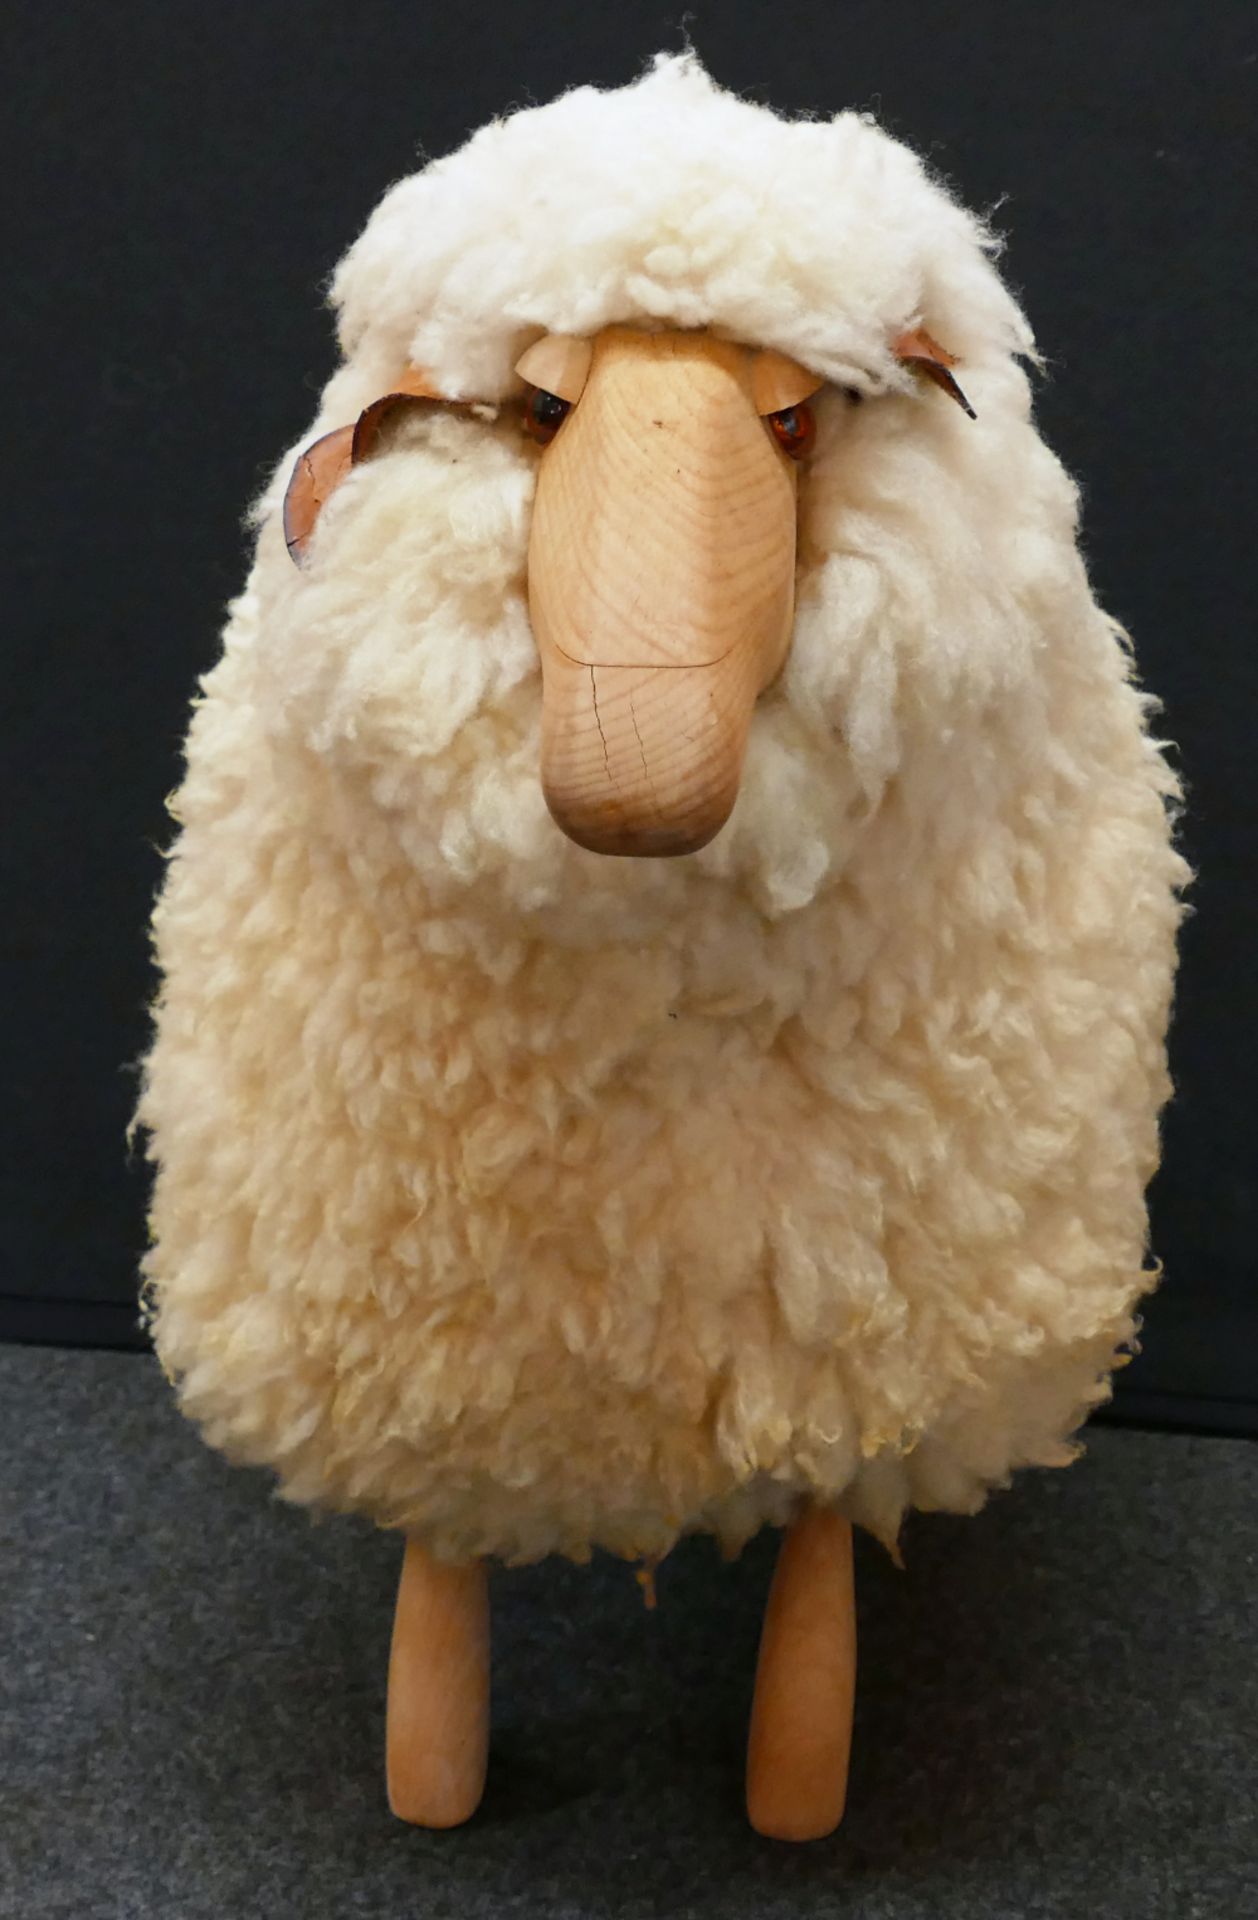 1 Hocker "Sheep" wohl Hans-Peter KRAFFT für MEIER 1960er Jahre, Holz/Wolle, ca. 60x73x36cm,